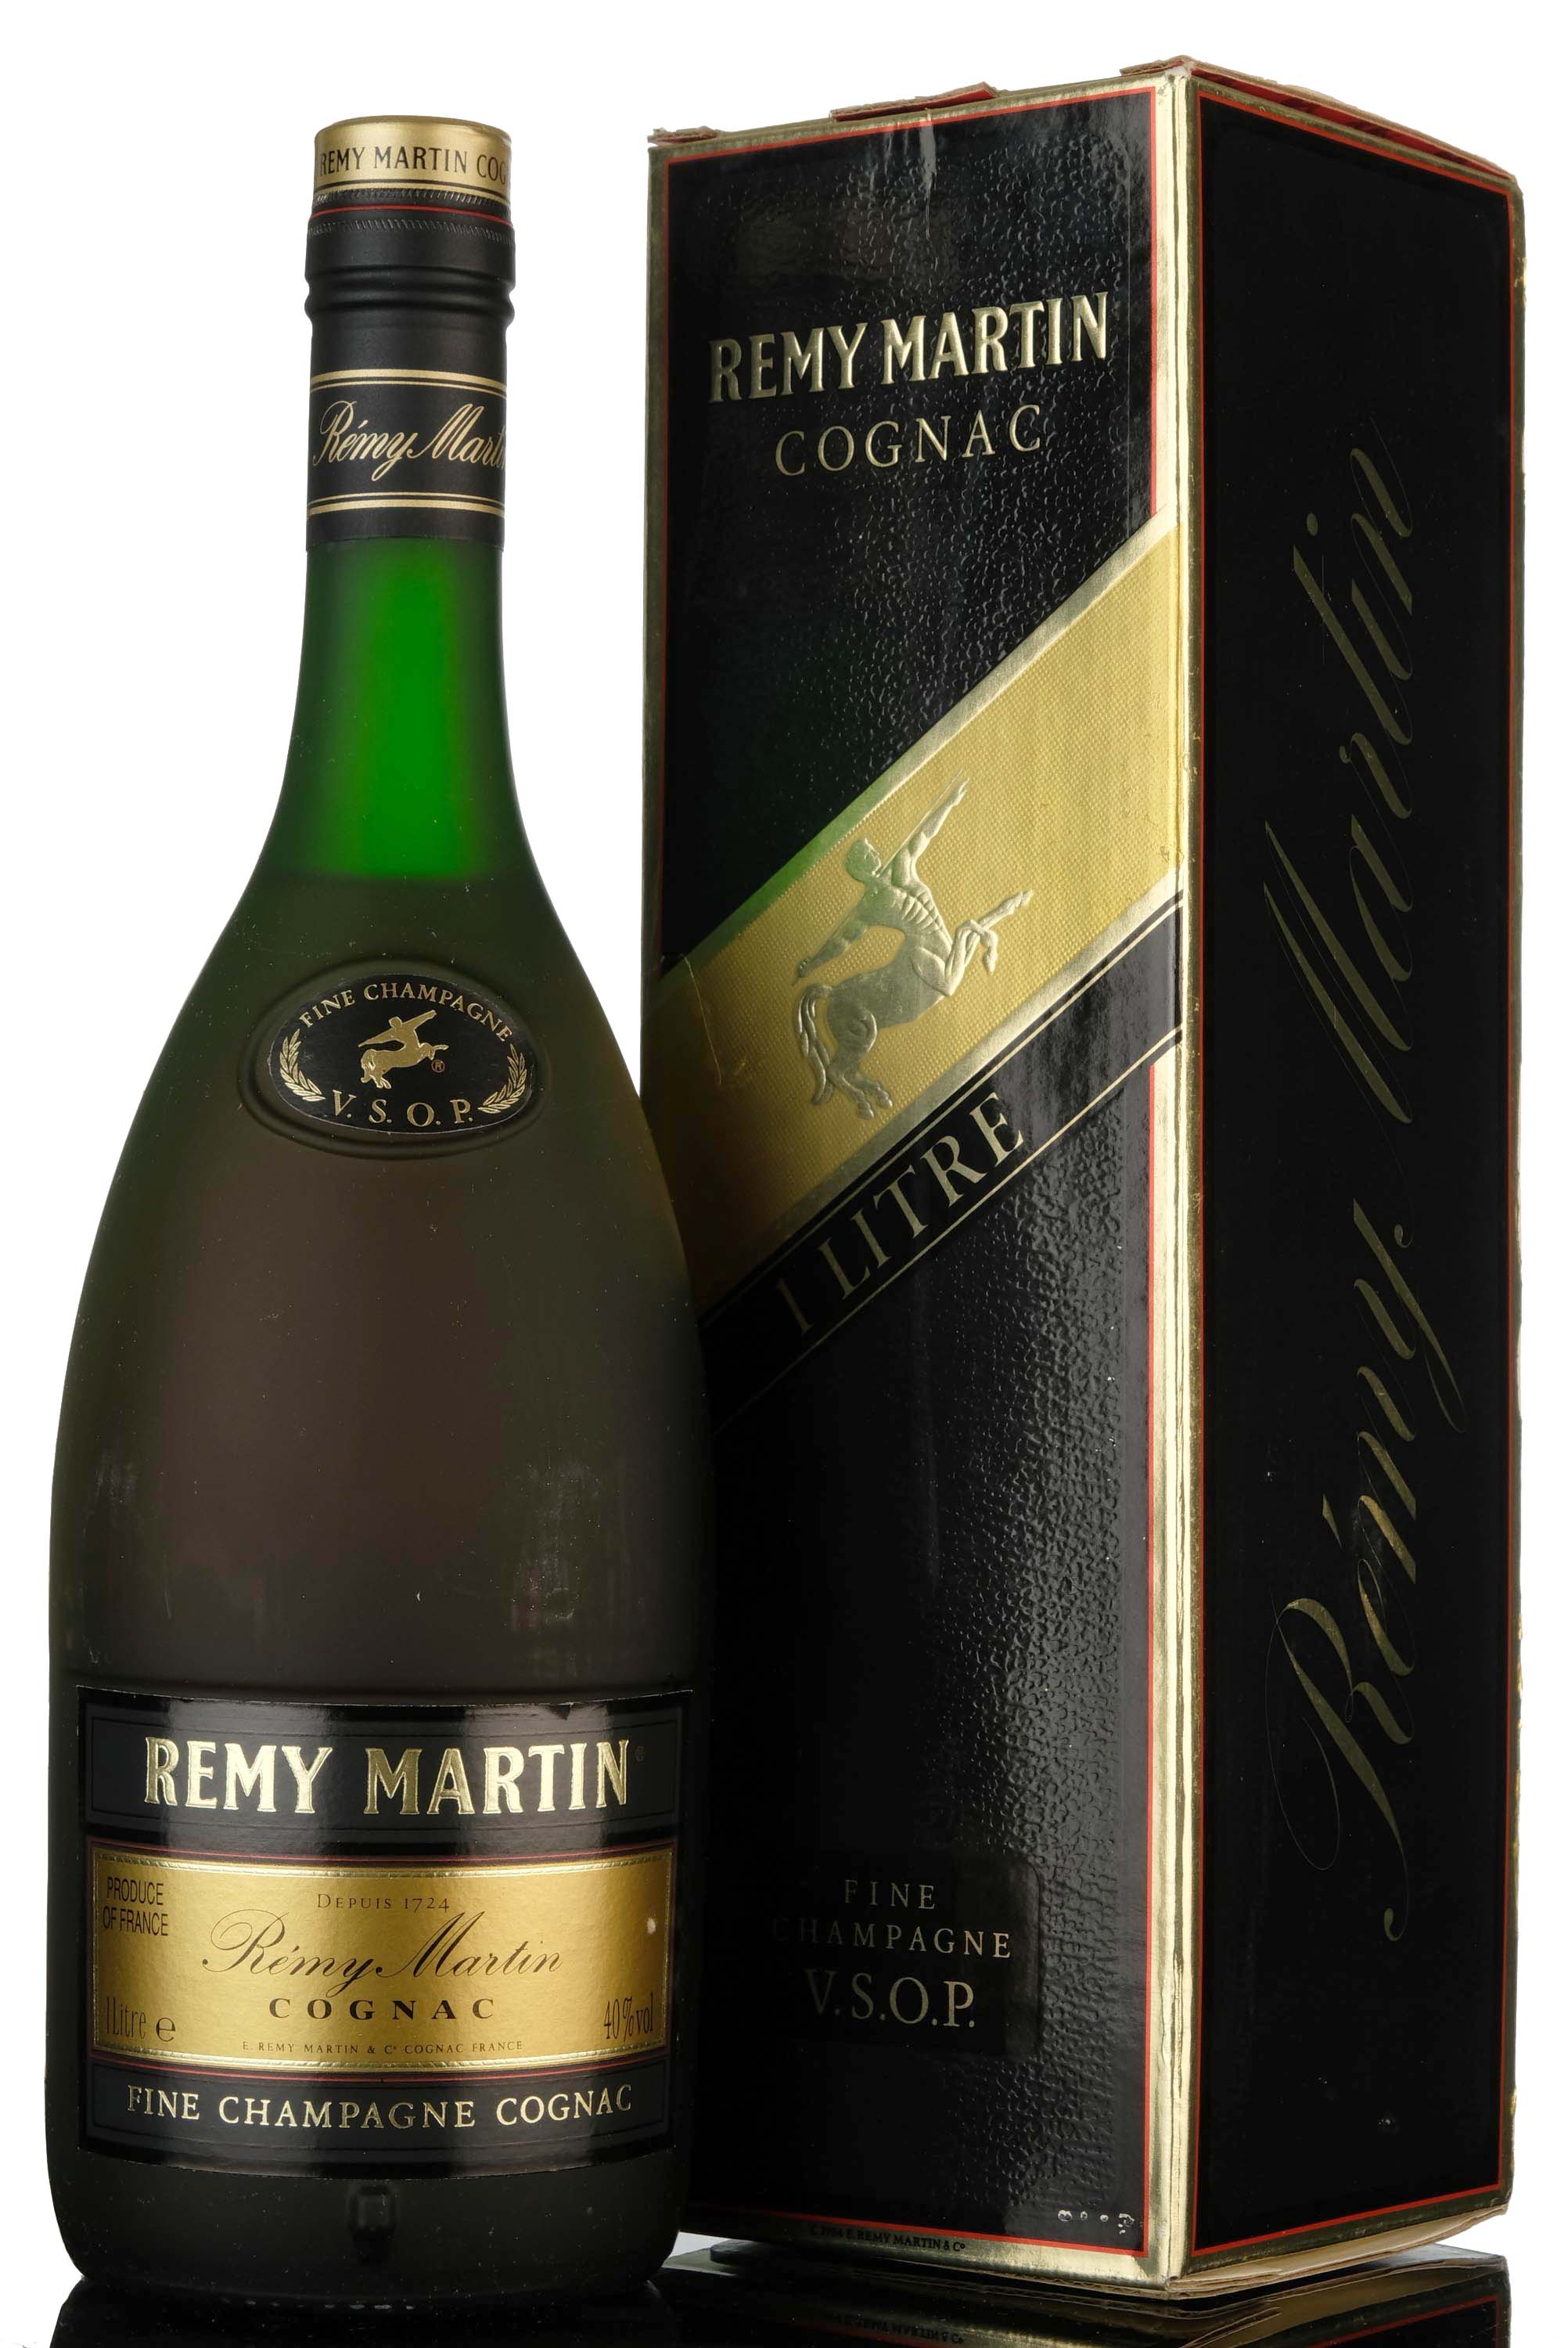 Remy Martin VSOP Fine Champagne Cognac - 1 Litre